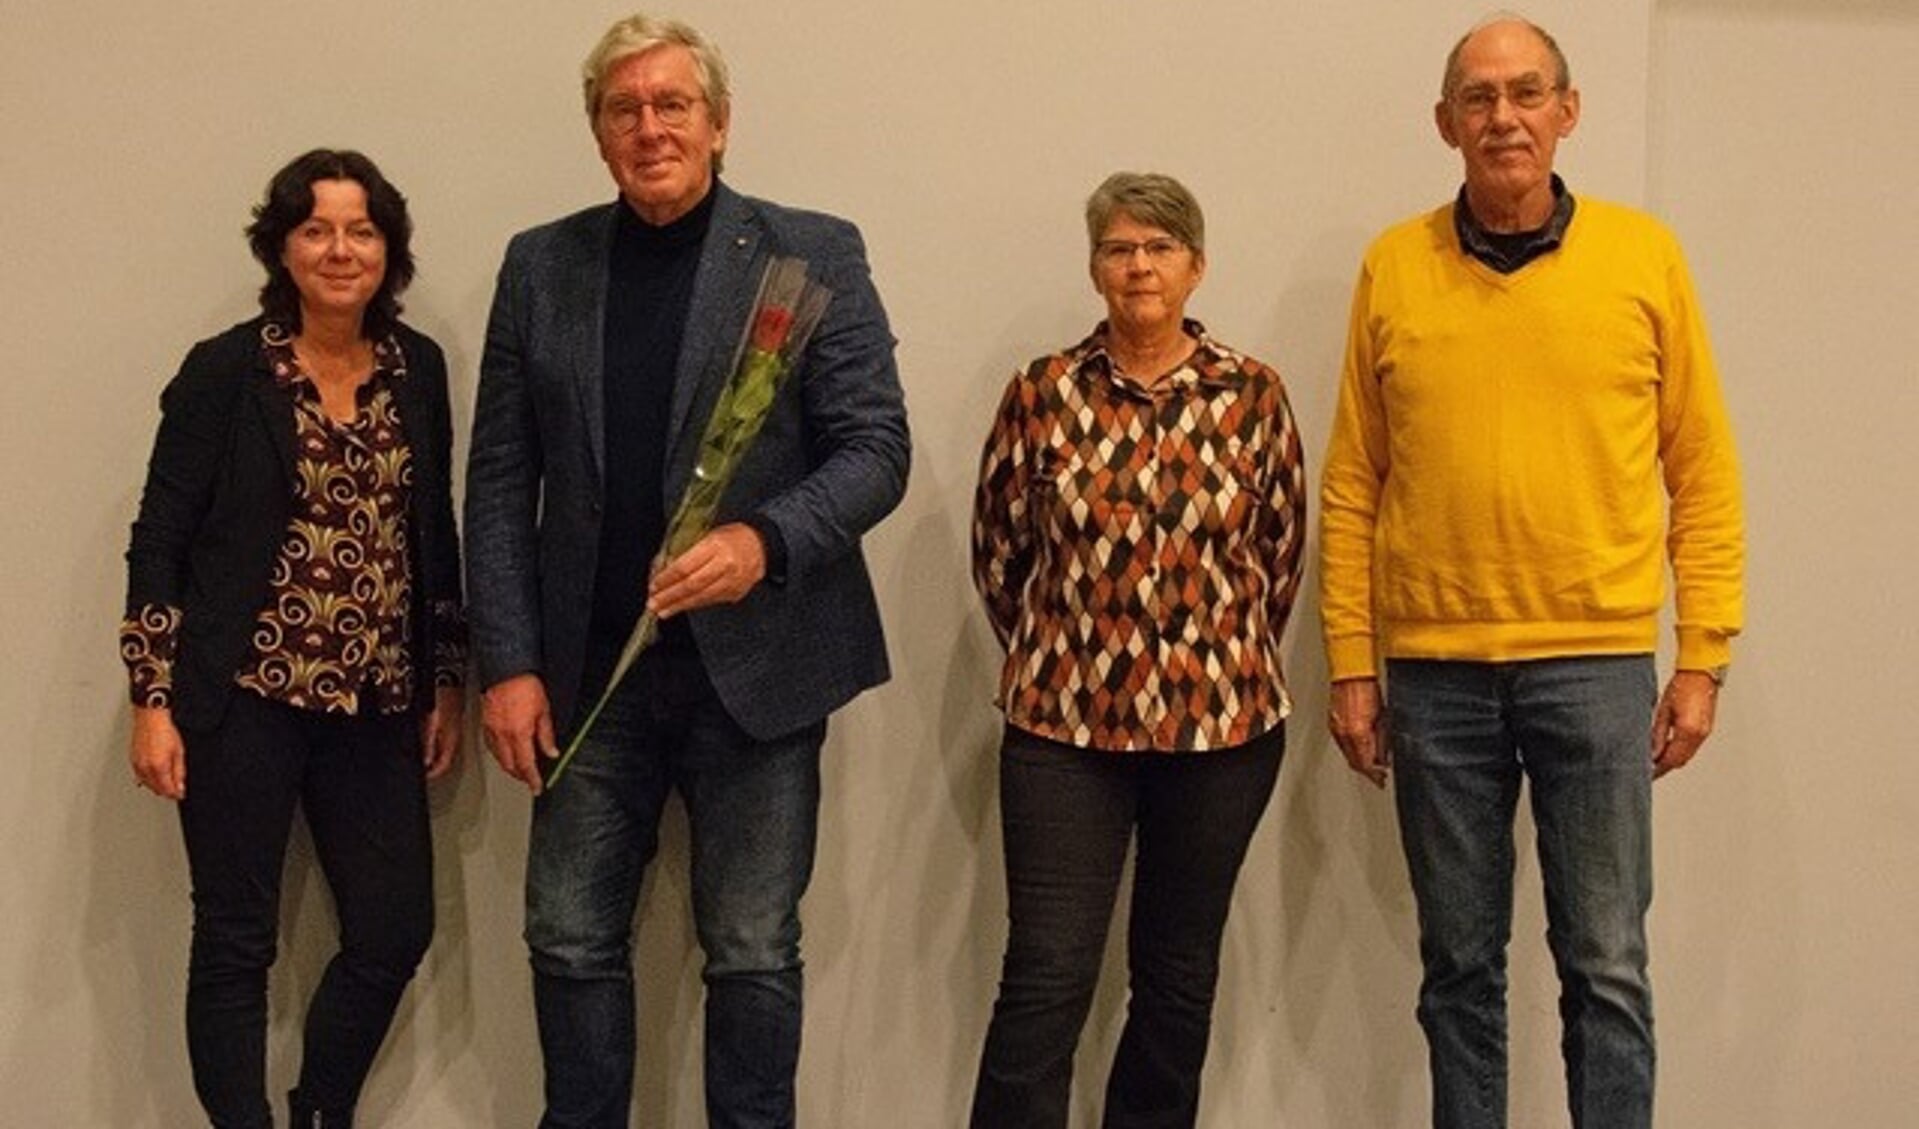 V.l.n.r.: Aleida Agema, Peter van de Hoef, Sofie Kleinhuis en Harke Heida.